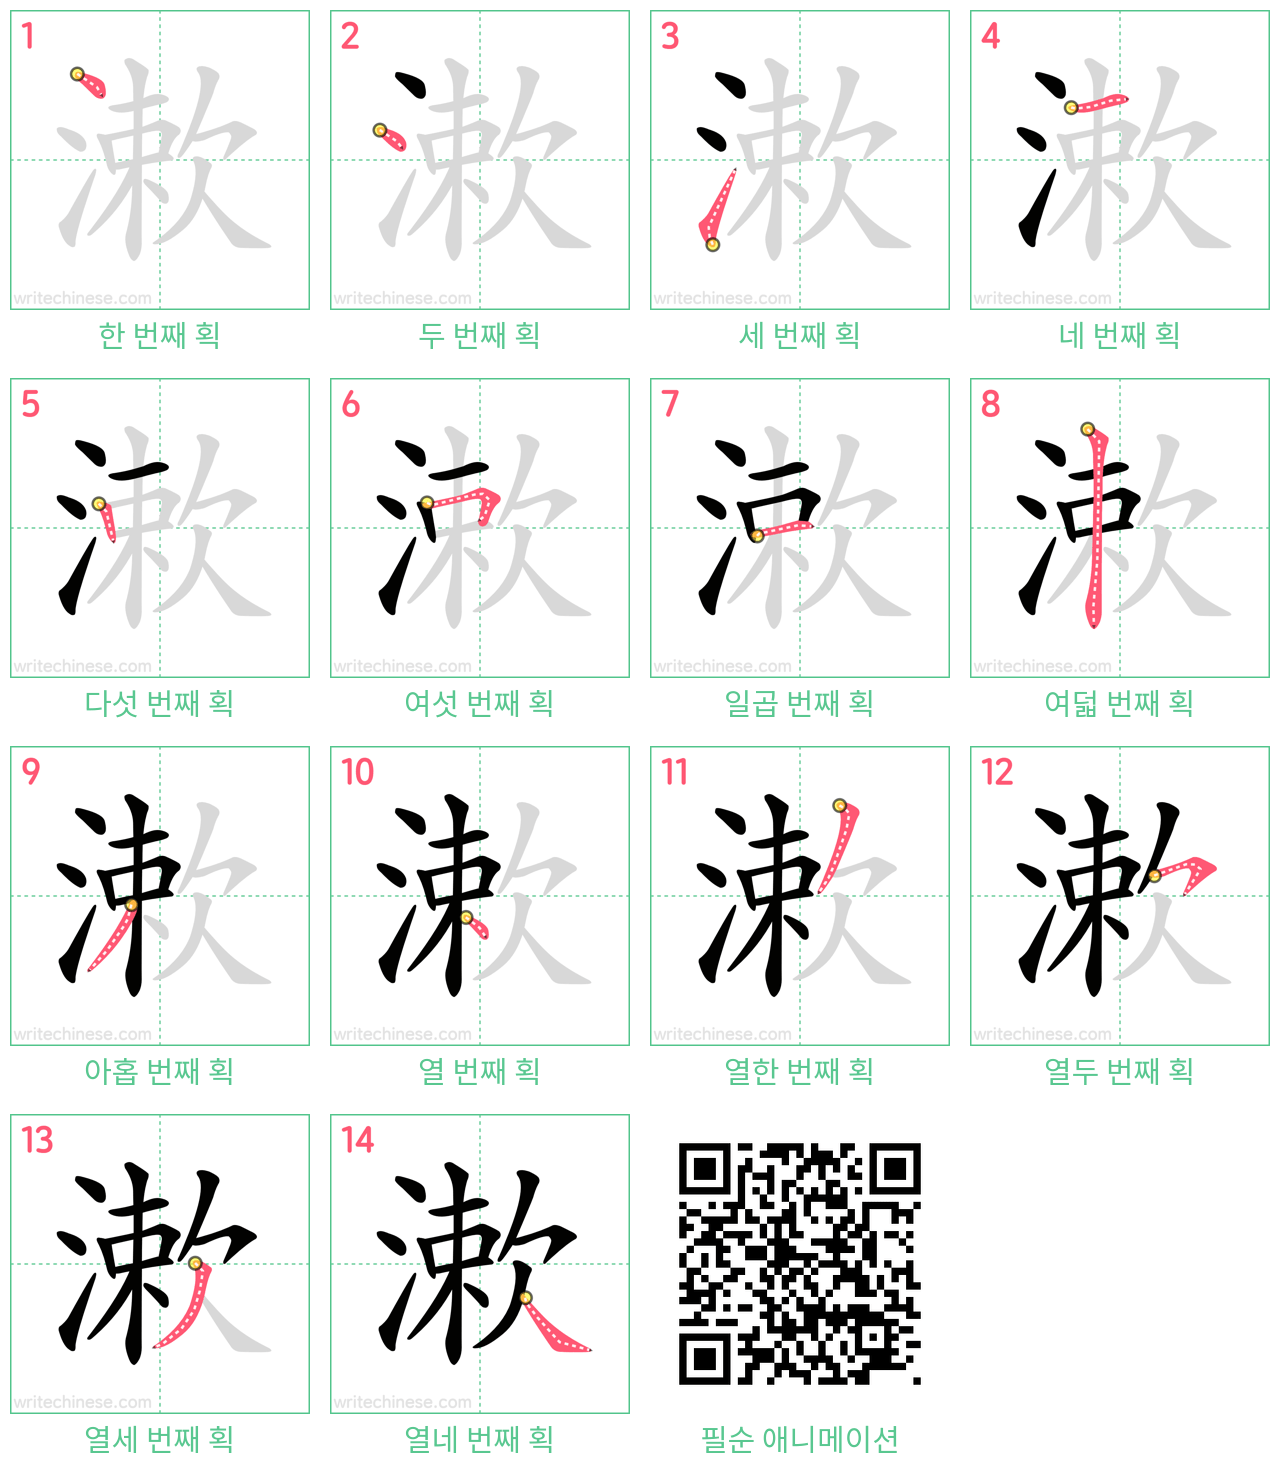 漱 step-by-step stroke order diagrams